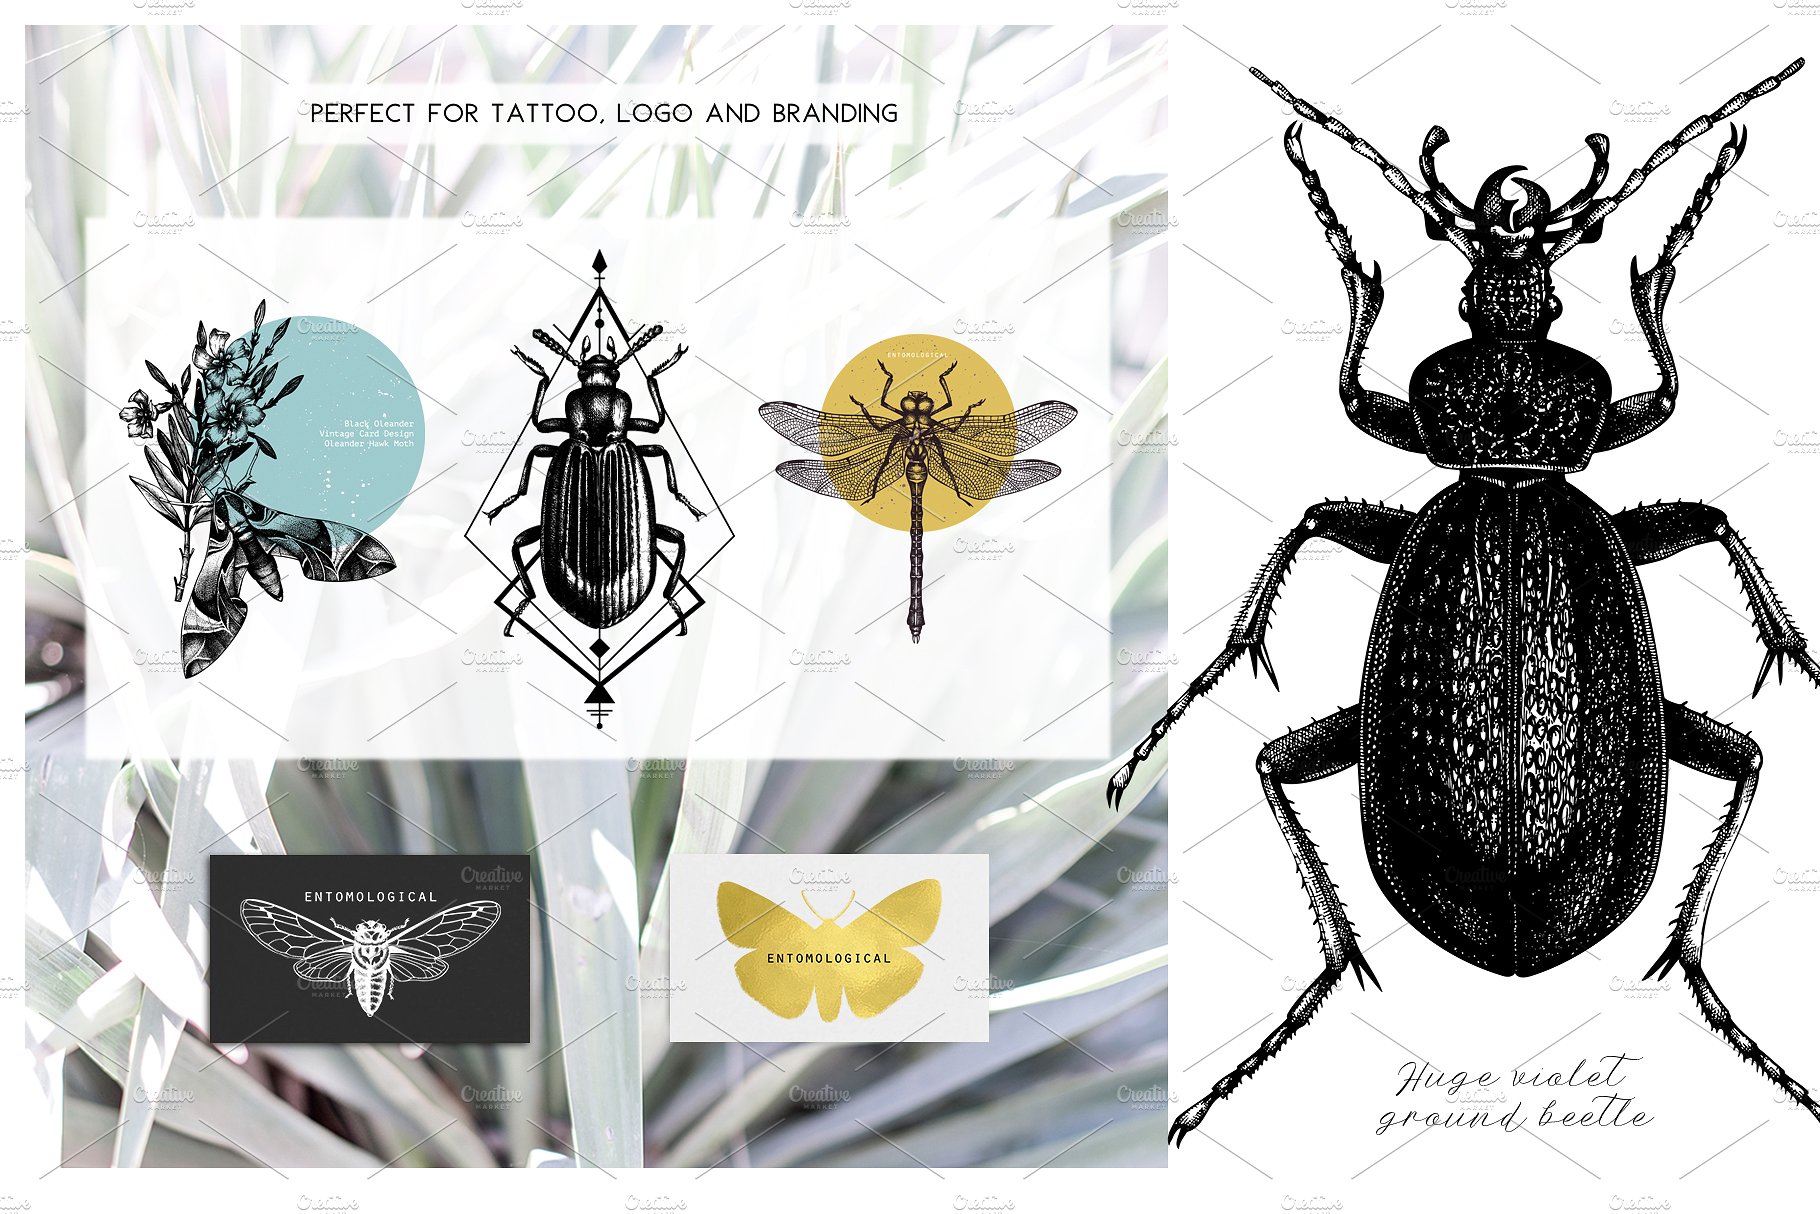 手绘昆虫插图设计素材Vector Insects Illus